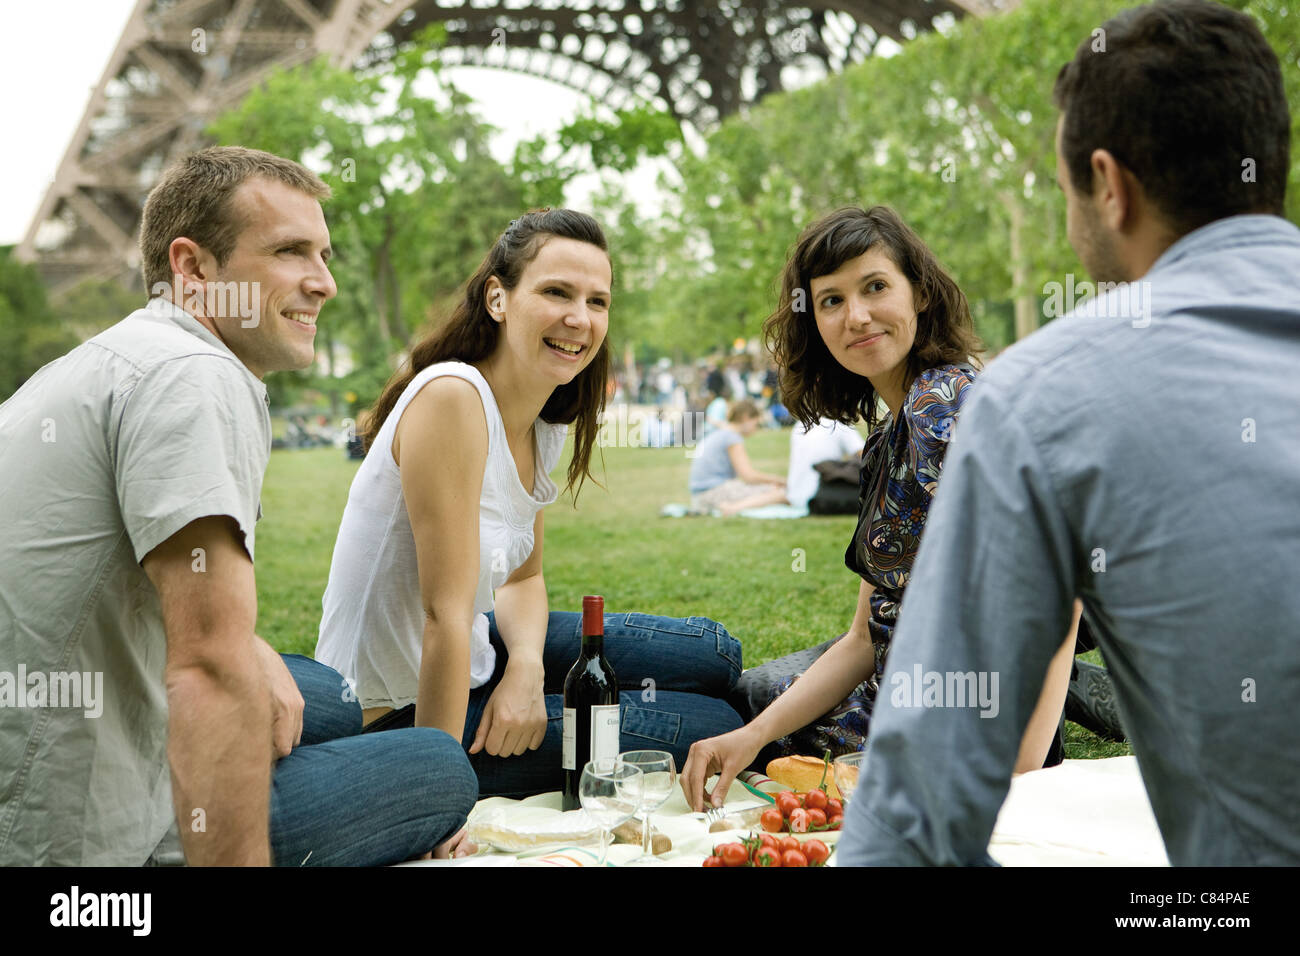 Friends enjoying picnic à la base de la Tour Eiffel, Paris, France Banque D'Images